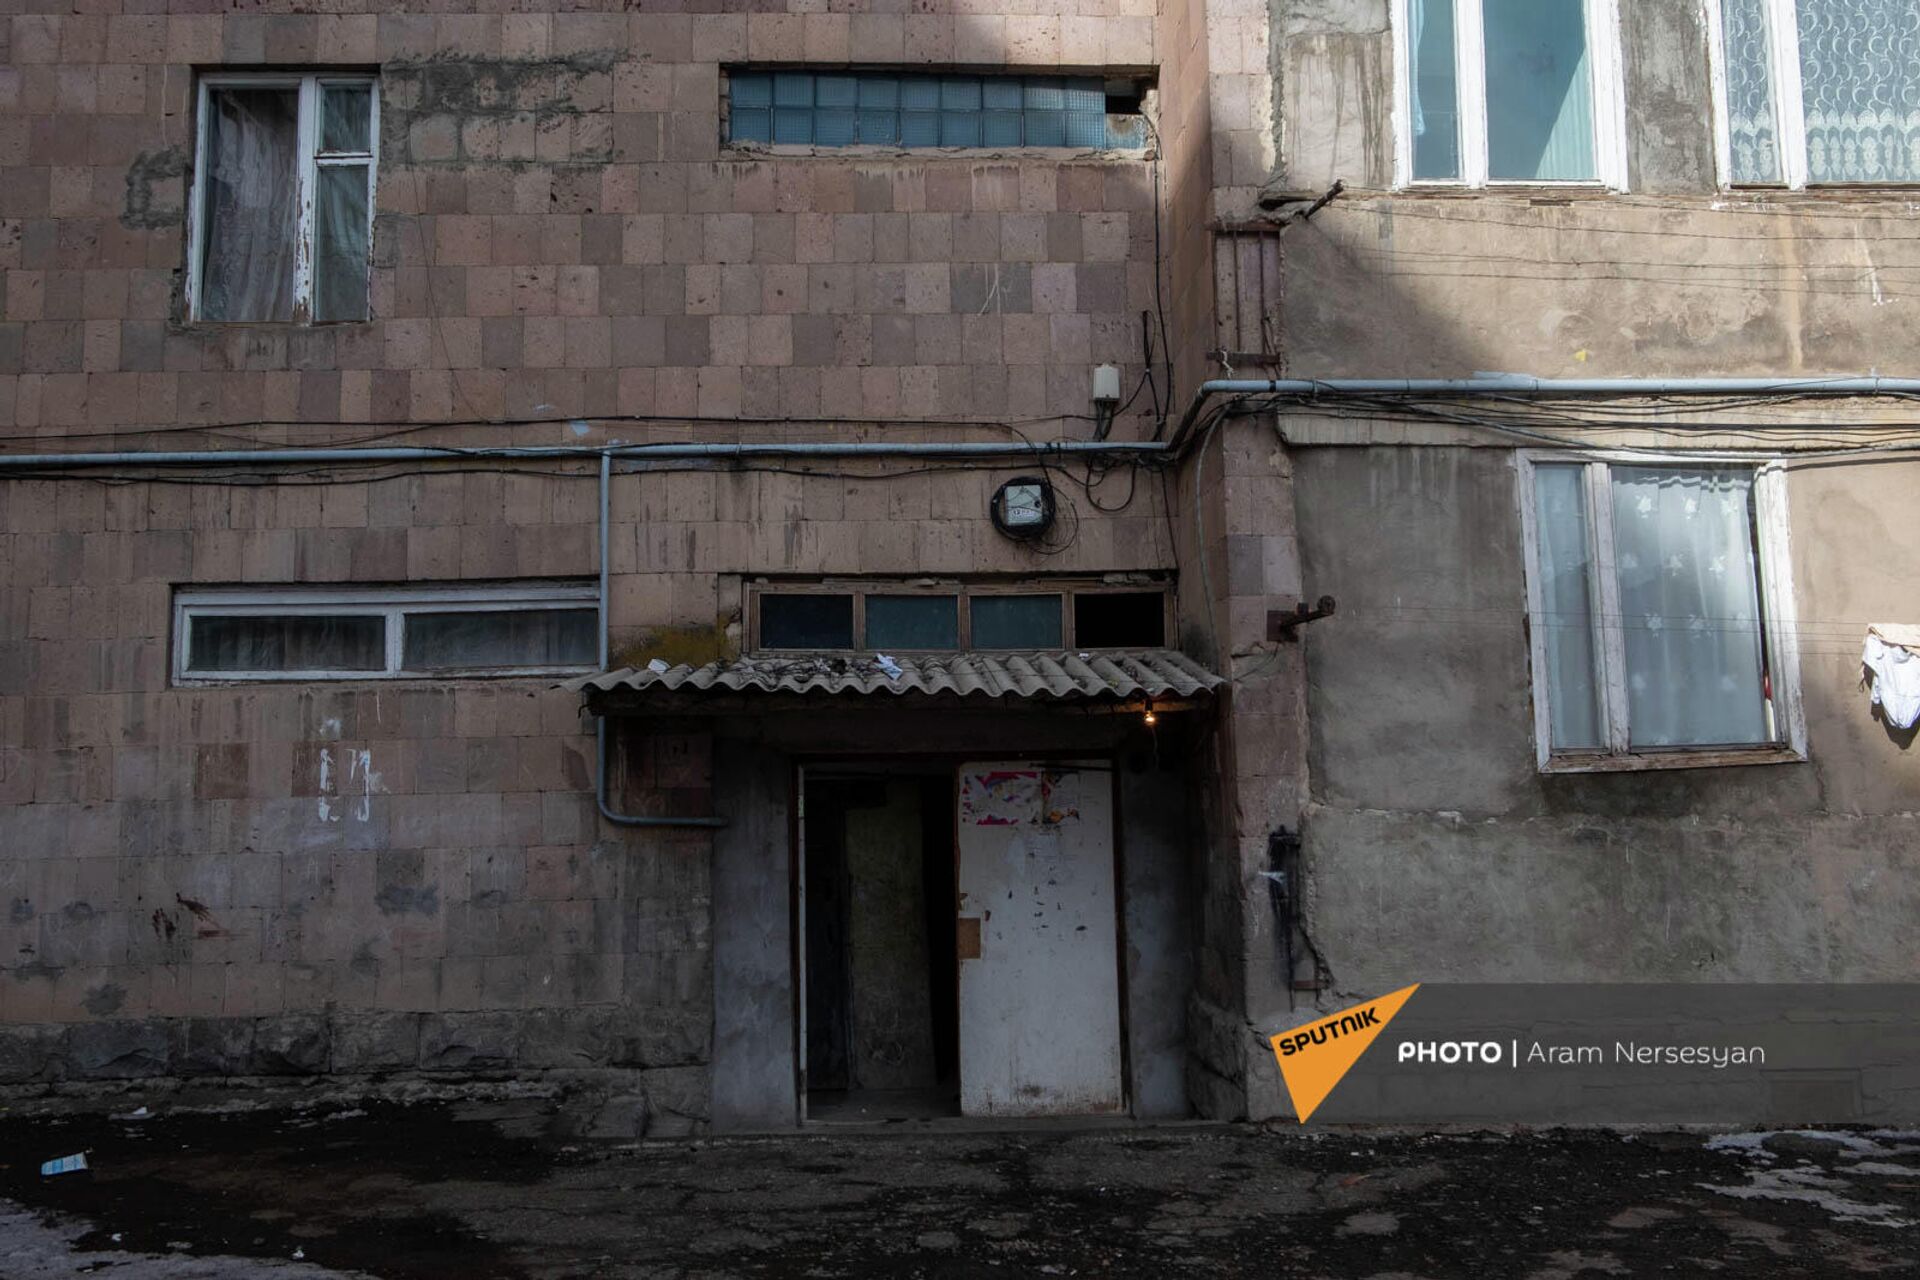 Սևան քաղաքի Միկրո կոչվող թաղամասում շենքը, որտեղ ապրում էր Մովսեսը - Sputnik Արմենիա, 1920, 07.01.2022